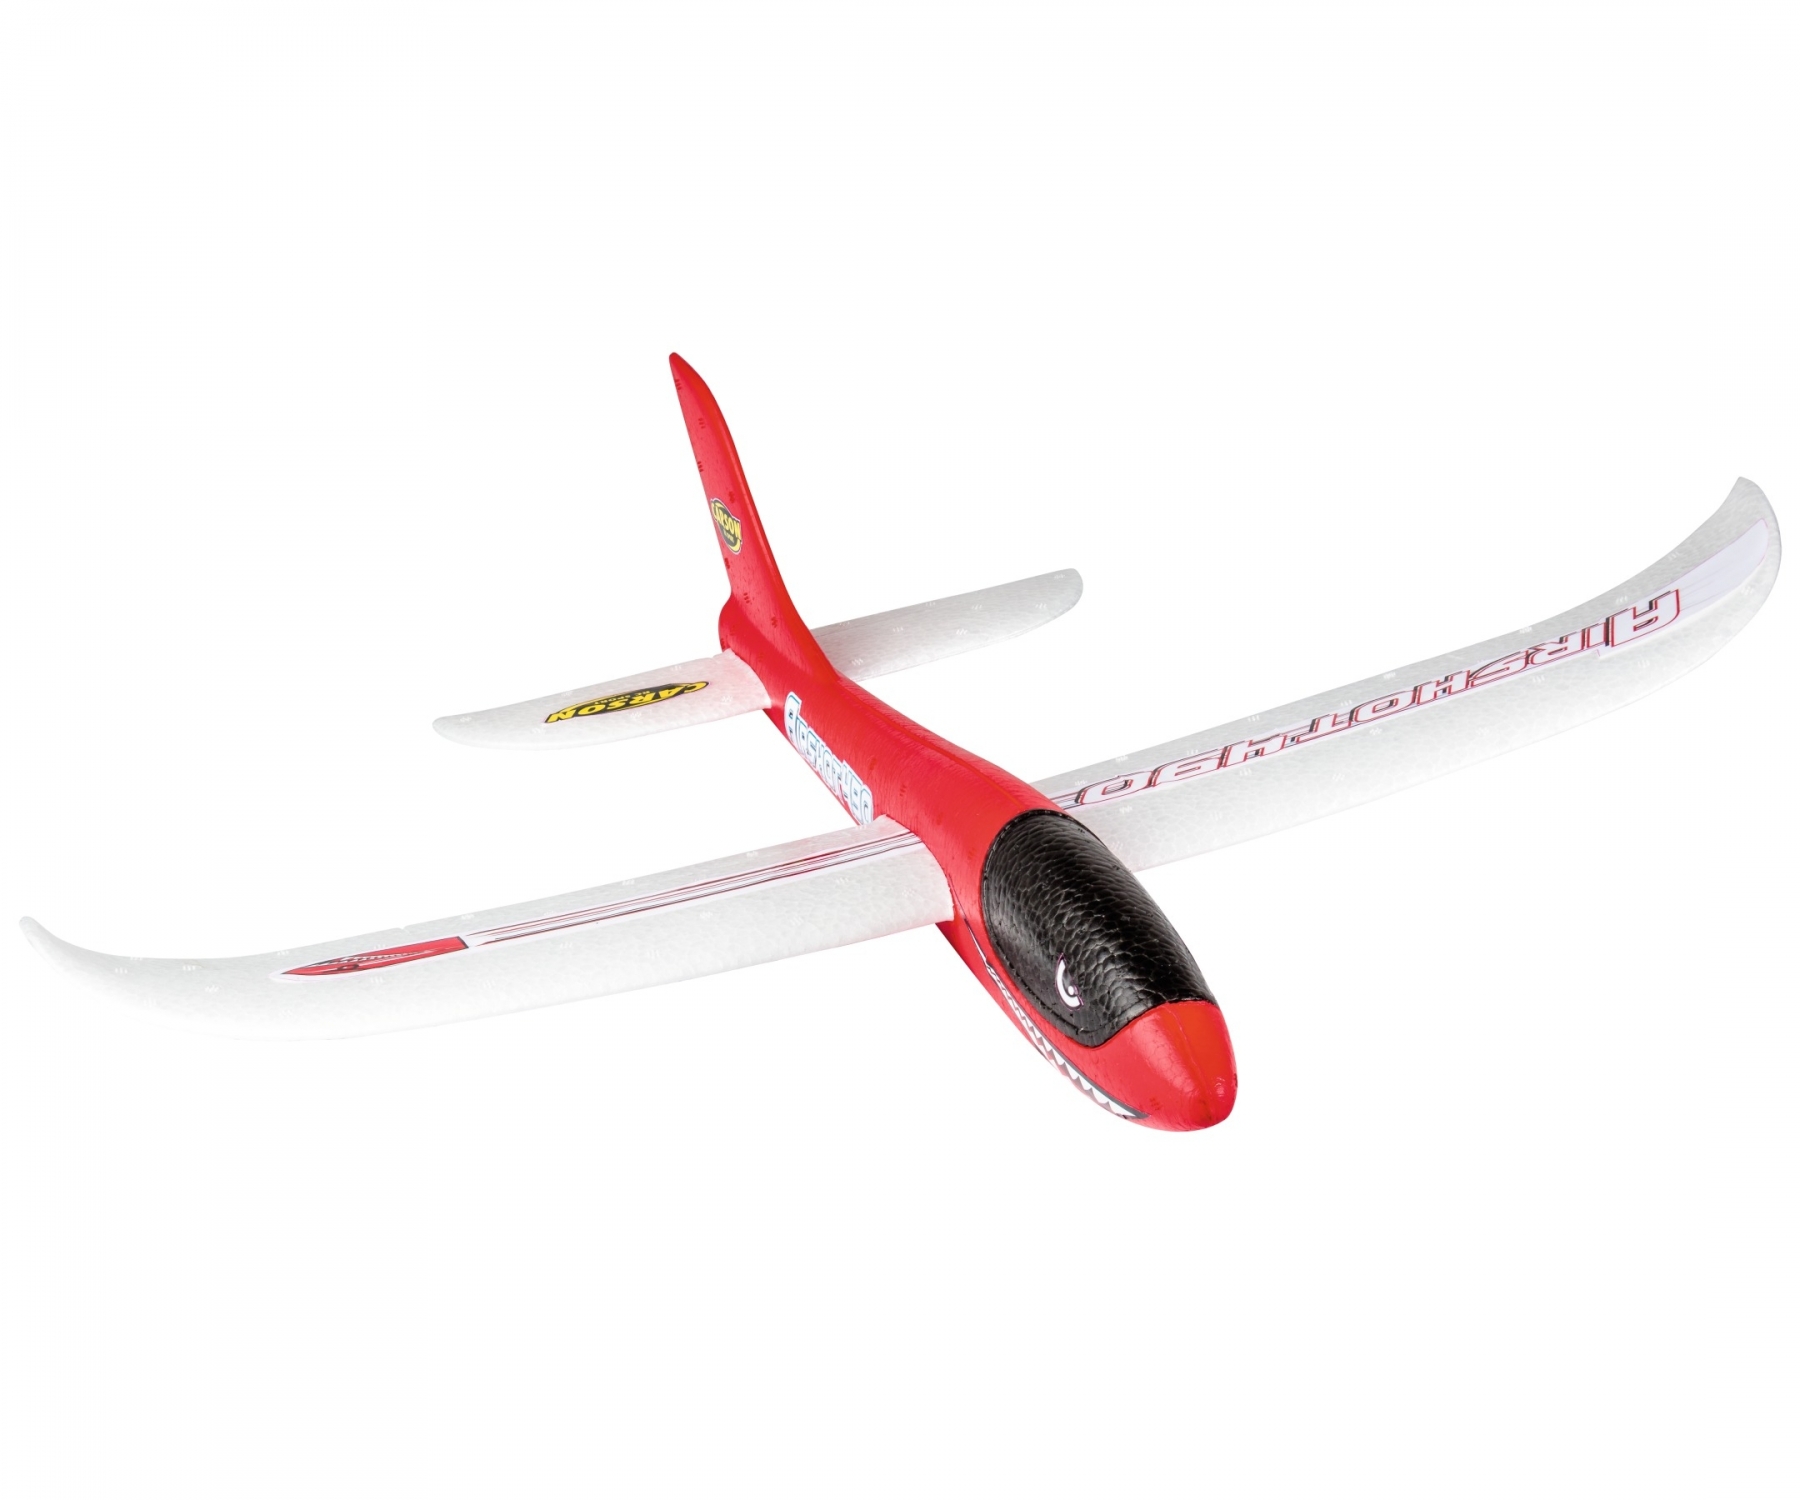 carson-500504013-2-Airshot-490-Wurfgleiter-Segelflugzeug-für-kleine-Kinderhände-rot-robust-haltbar